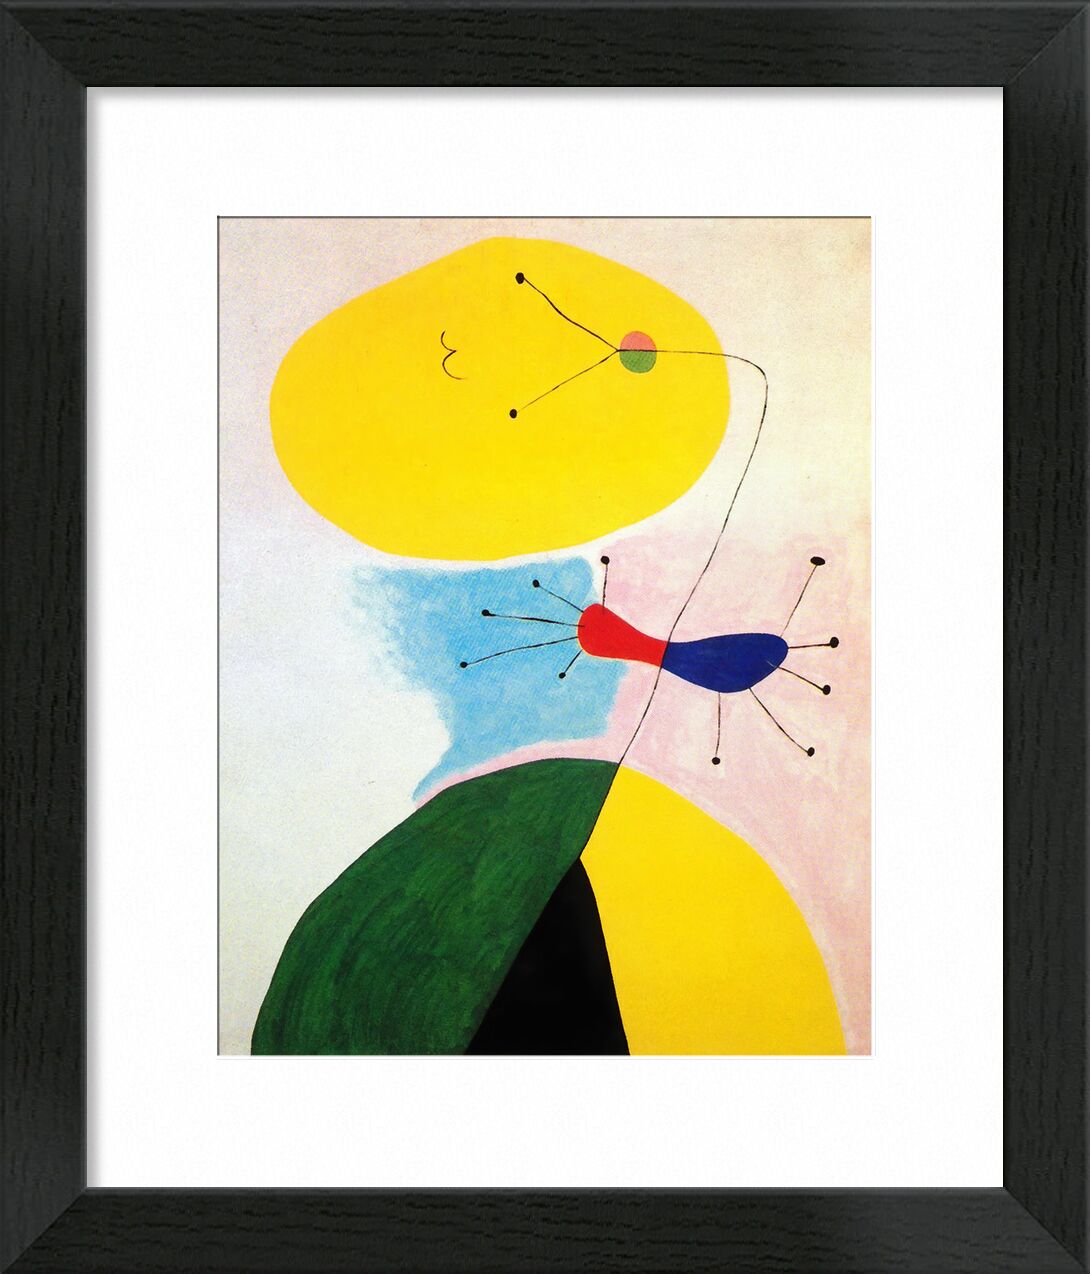 Portrait - Joan Miró von Bildende Kunst, Prodi Art, Farben, abstrakt, Zeichnung, Porträt, Joan Miró